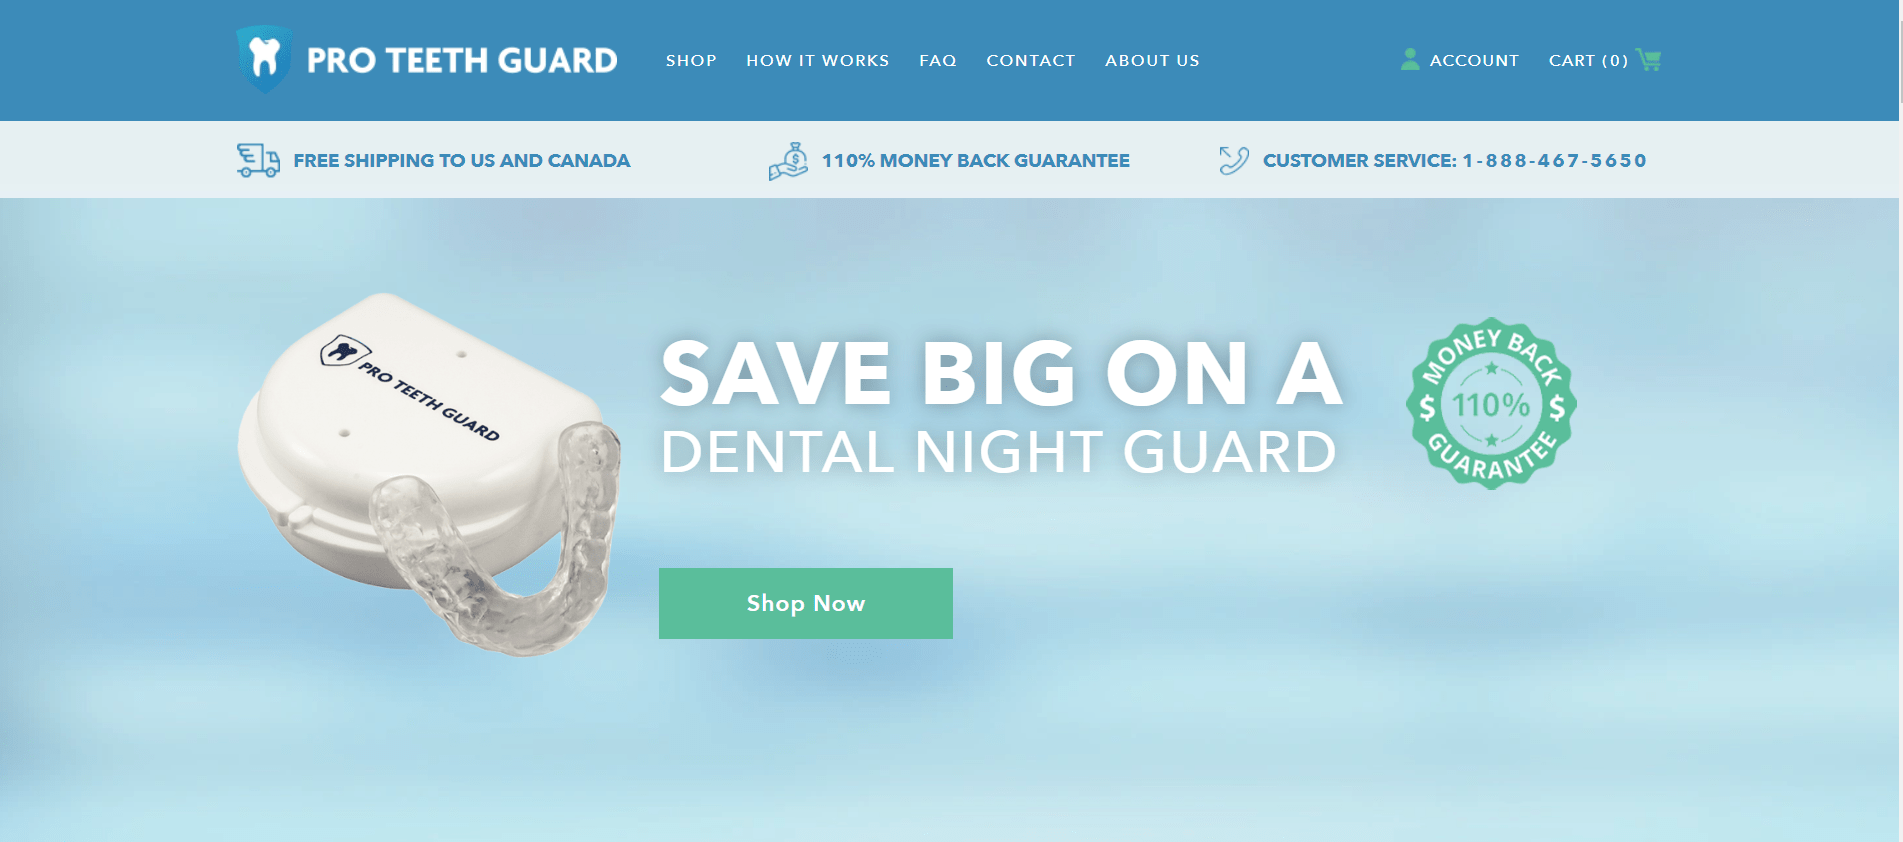  Pro Teeth Guard Coupon Codes- Dental Night Guard